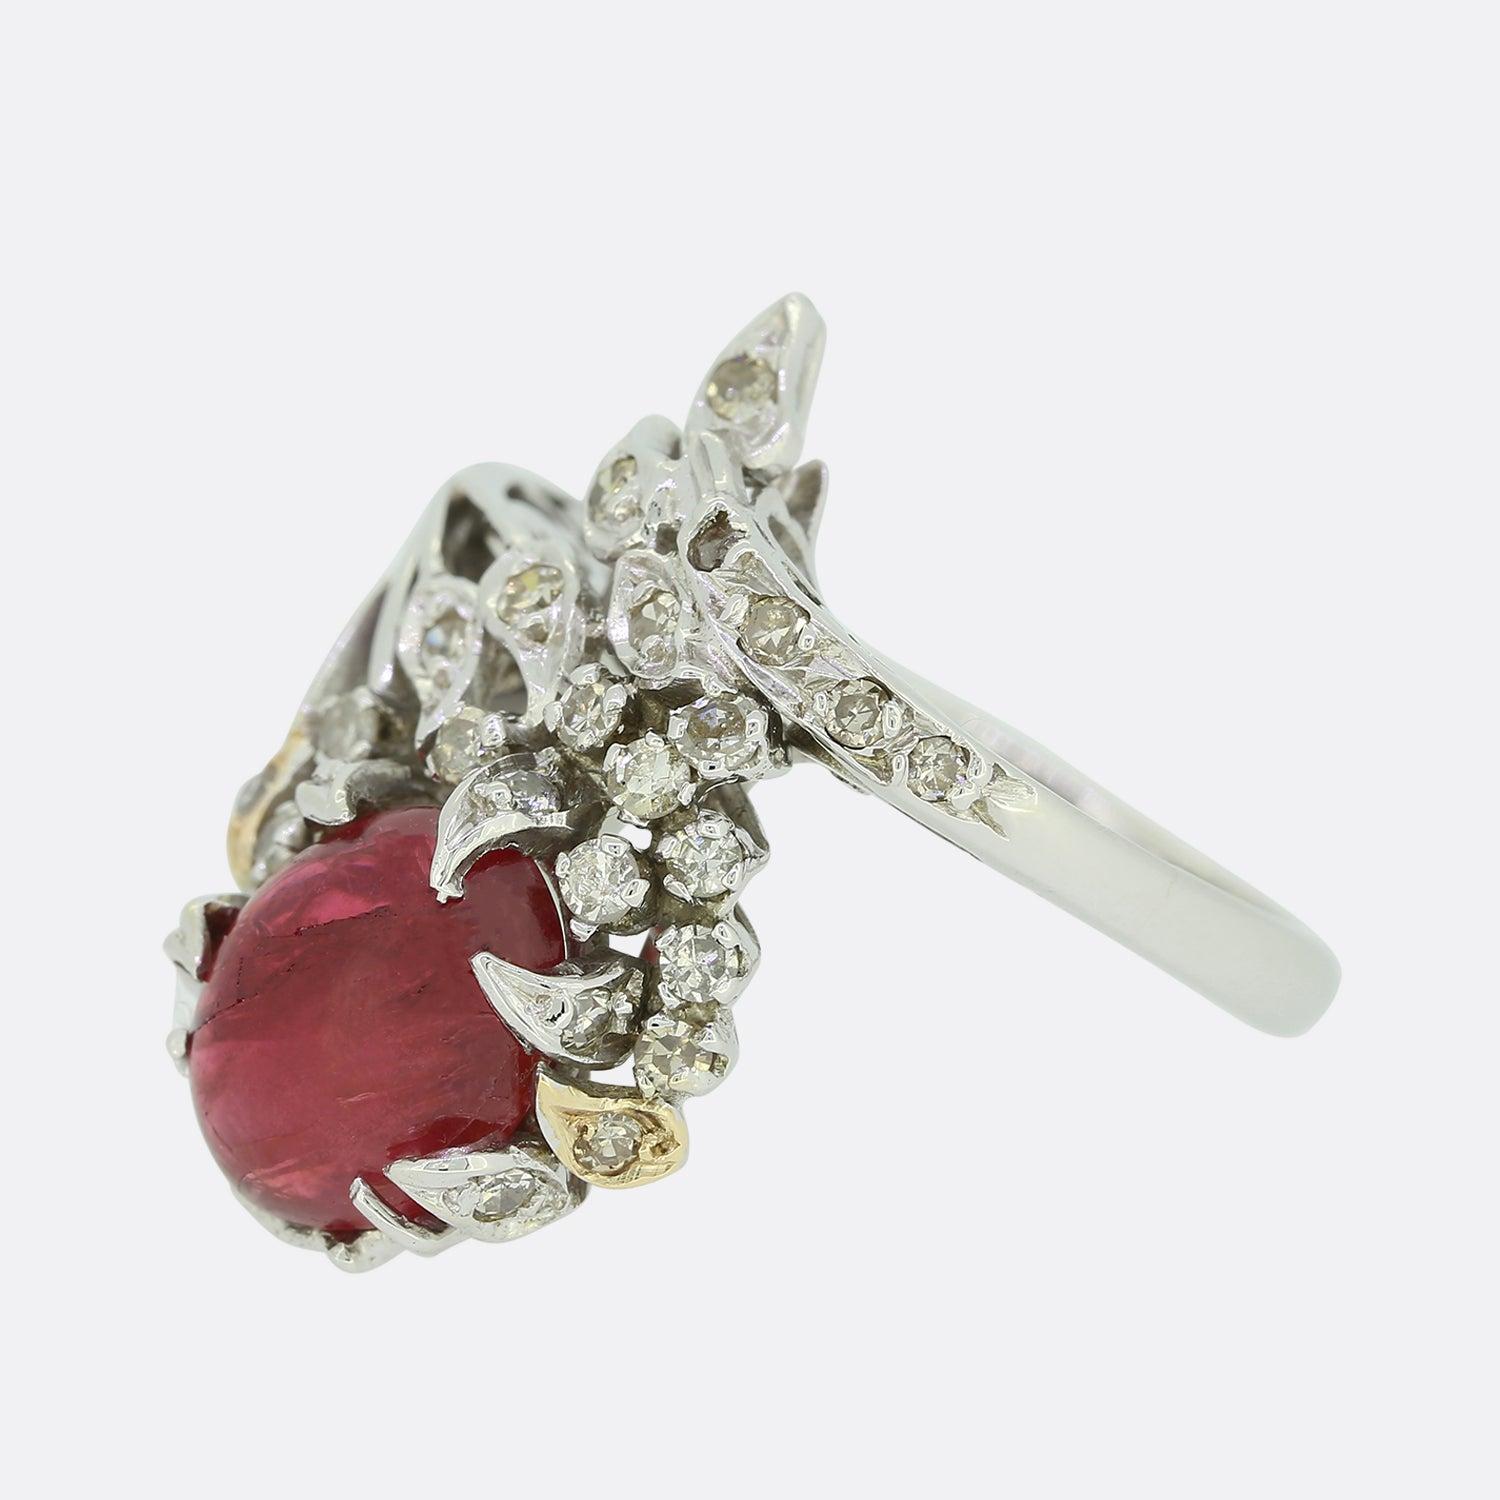 Dies ist eine wunderbare Vintage Rubin und Diamant-Ring. Der Ring zeigt einen großen Cabochon-Rubin, der von einer Gruppe von Diamanten im Einzelschliff umgeben ist, die in einer ungewöhnlich geformten, abstrakten Fassung aus 18 Karat Weißgold